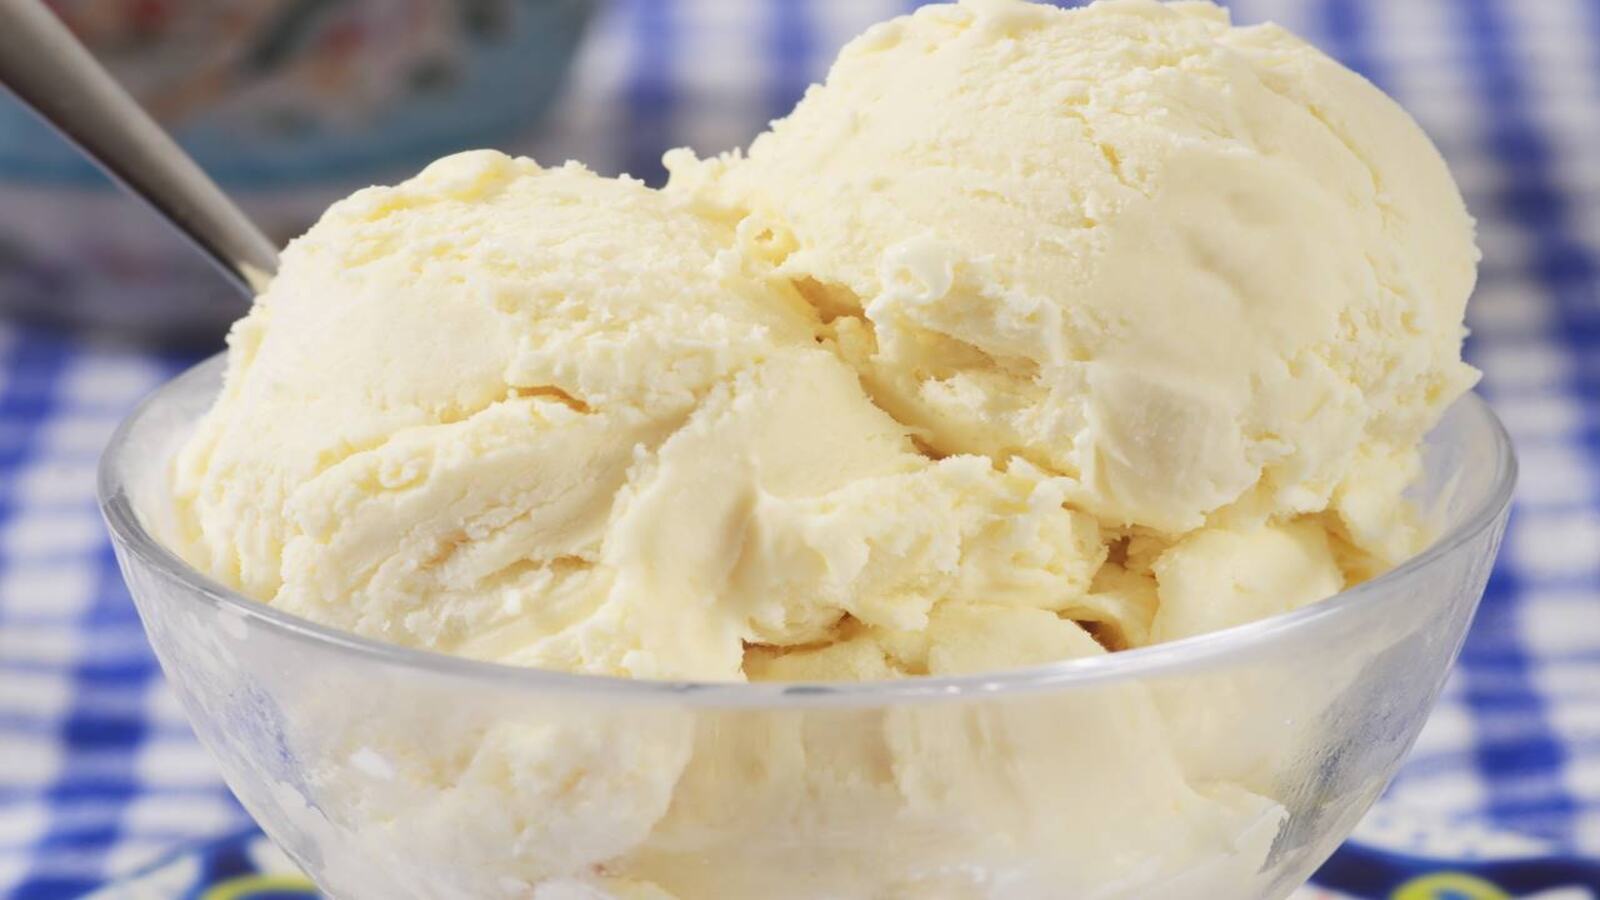 Fruit Ice Cream recipe : बच्चों के लिए घर पर बनाएं फलों से आइसक्रीम